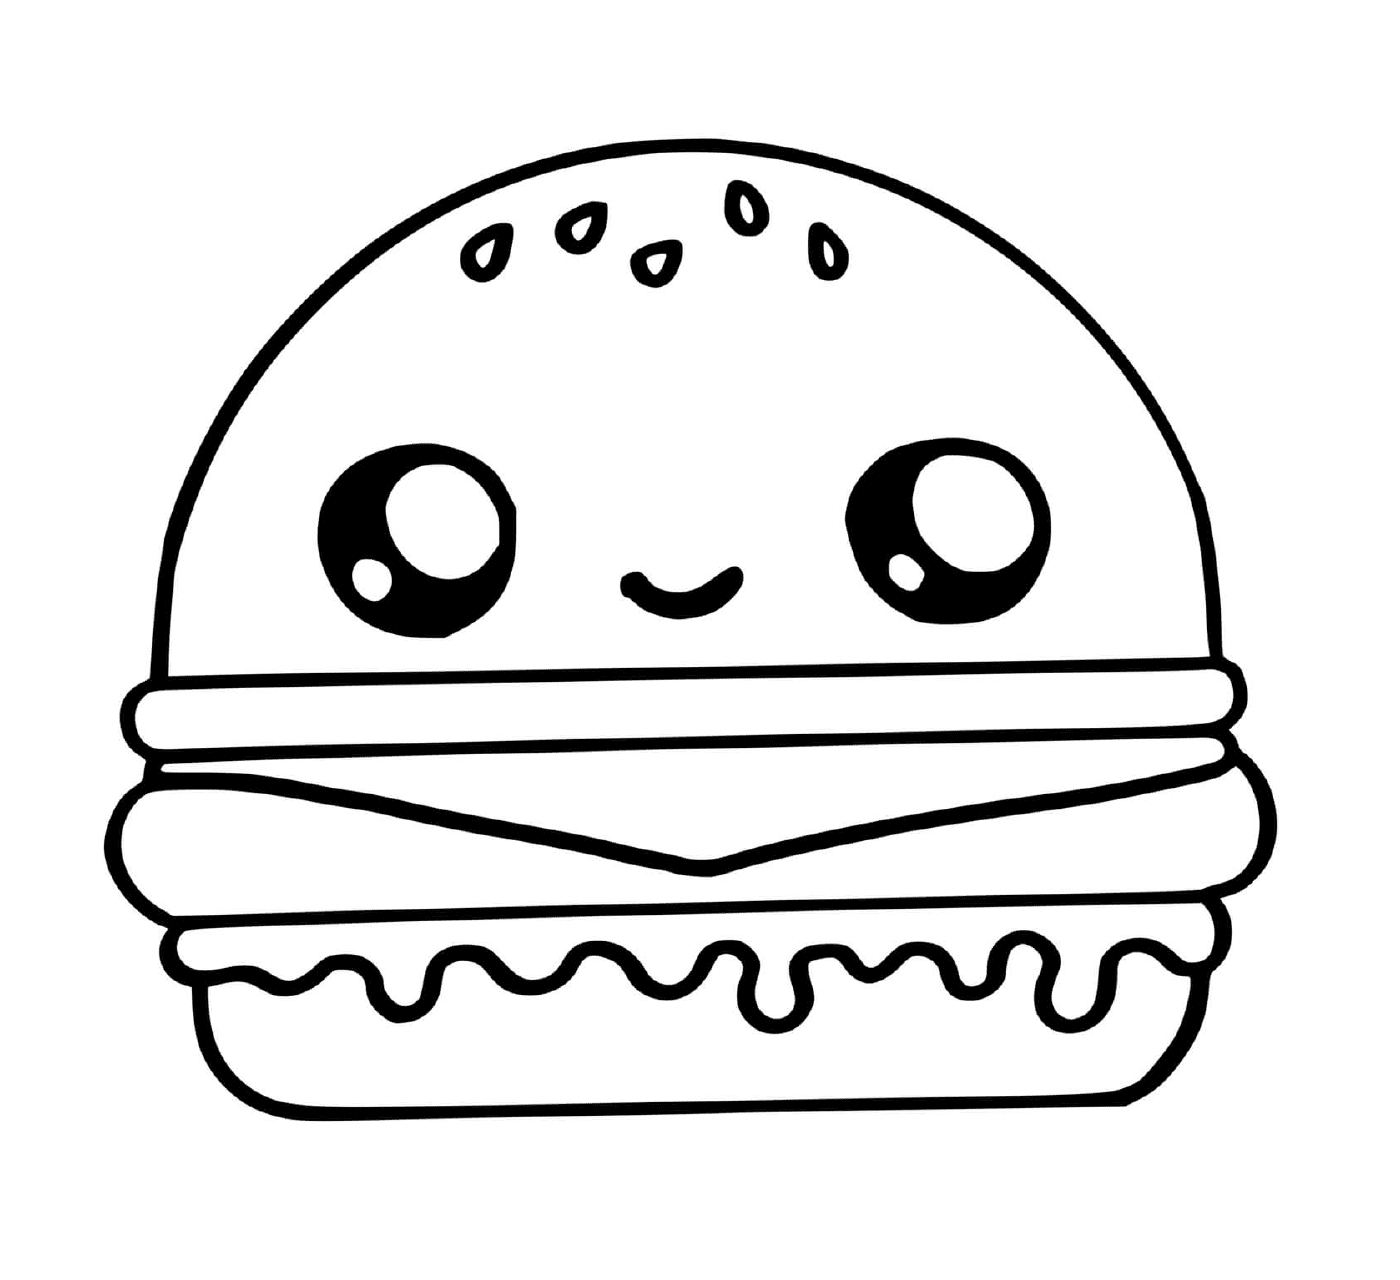   hamburger appétissant gourmand 